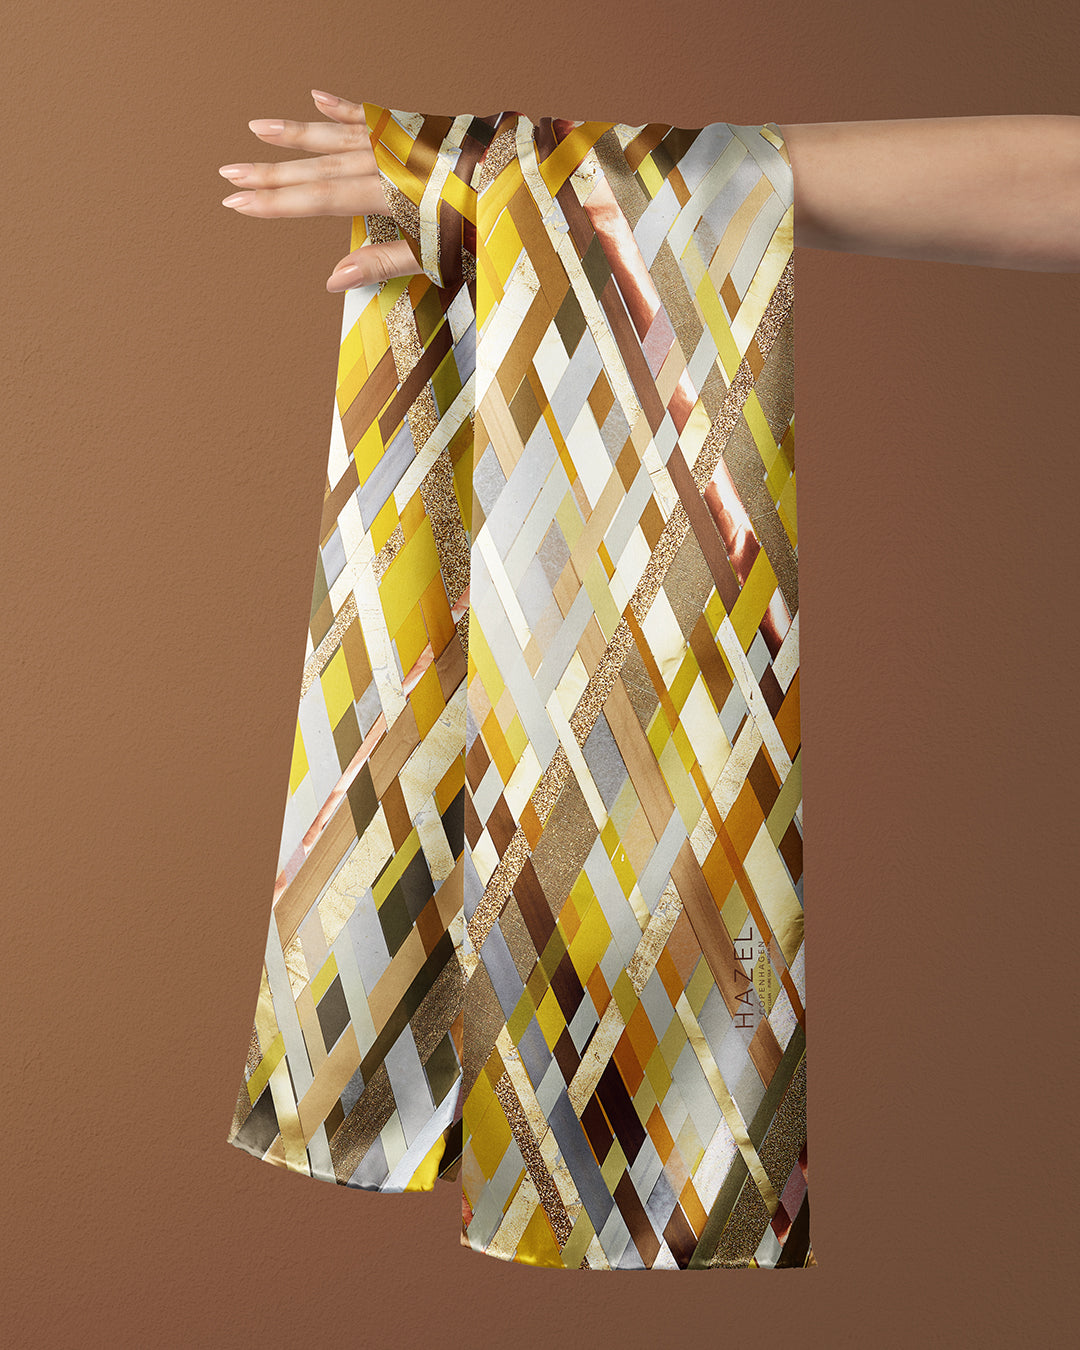 Aflangt silketørklæde i gyldne farver, silketørklæde i gule farver, Silketørklæde brune ternet, Silketørklæde med gule og brune håndmalede tern, Silketørklæde aflangt 160 x 65 cm, Silketørklæde i 100 % ren silke, silketørklæde i ægte silke twill, silketørklæde med design af Susanne Schjerning, silketørklæde med rullede kanter. Giv et silketørklæde i gave. Bæredygtigt silketørklæde i bæredygtig dansk design, silketørklædet der er nemt at binde. 